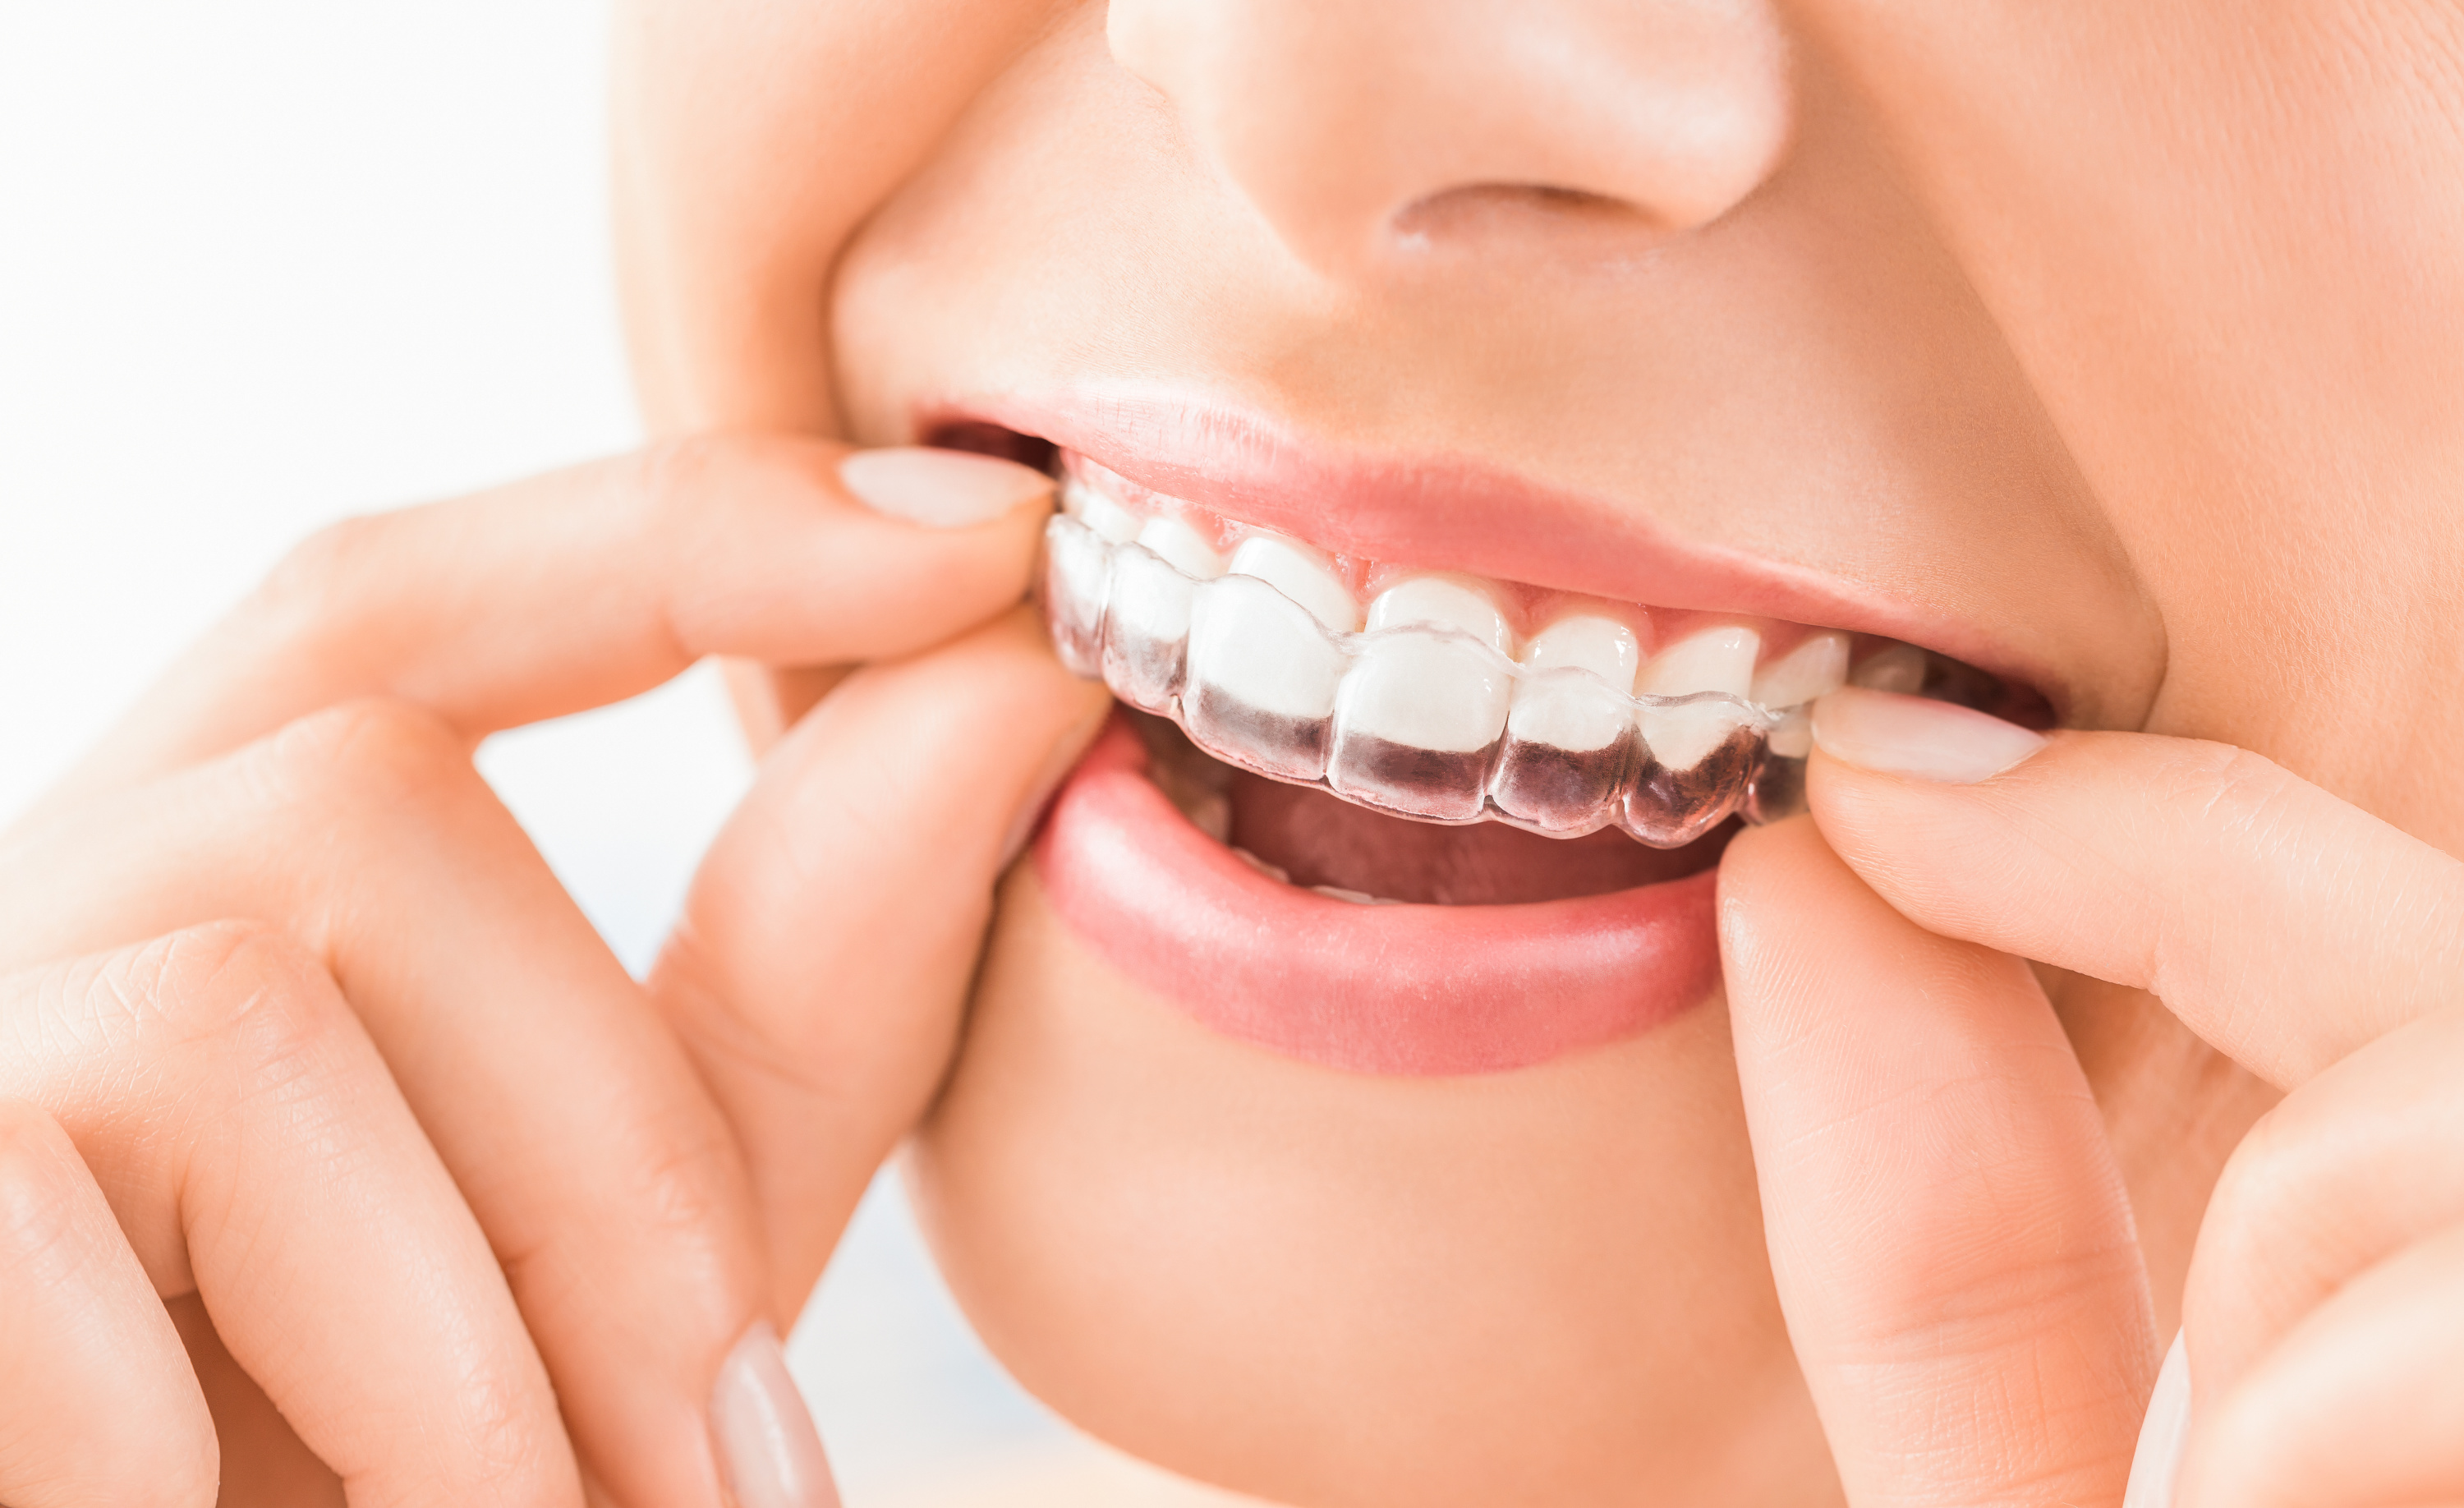 Les gouttières dentaires : bonne ou mauvaise idée ? - Magazine Avantages